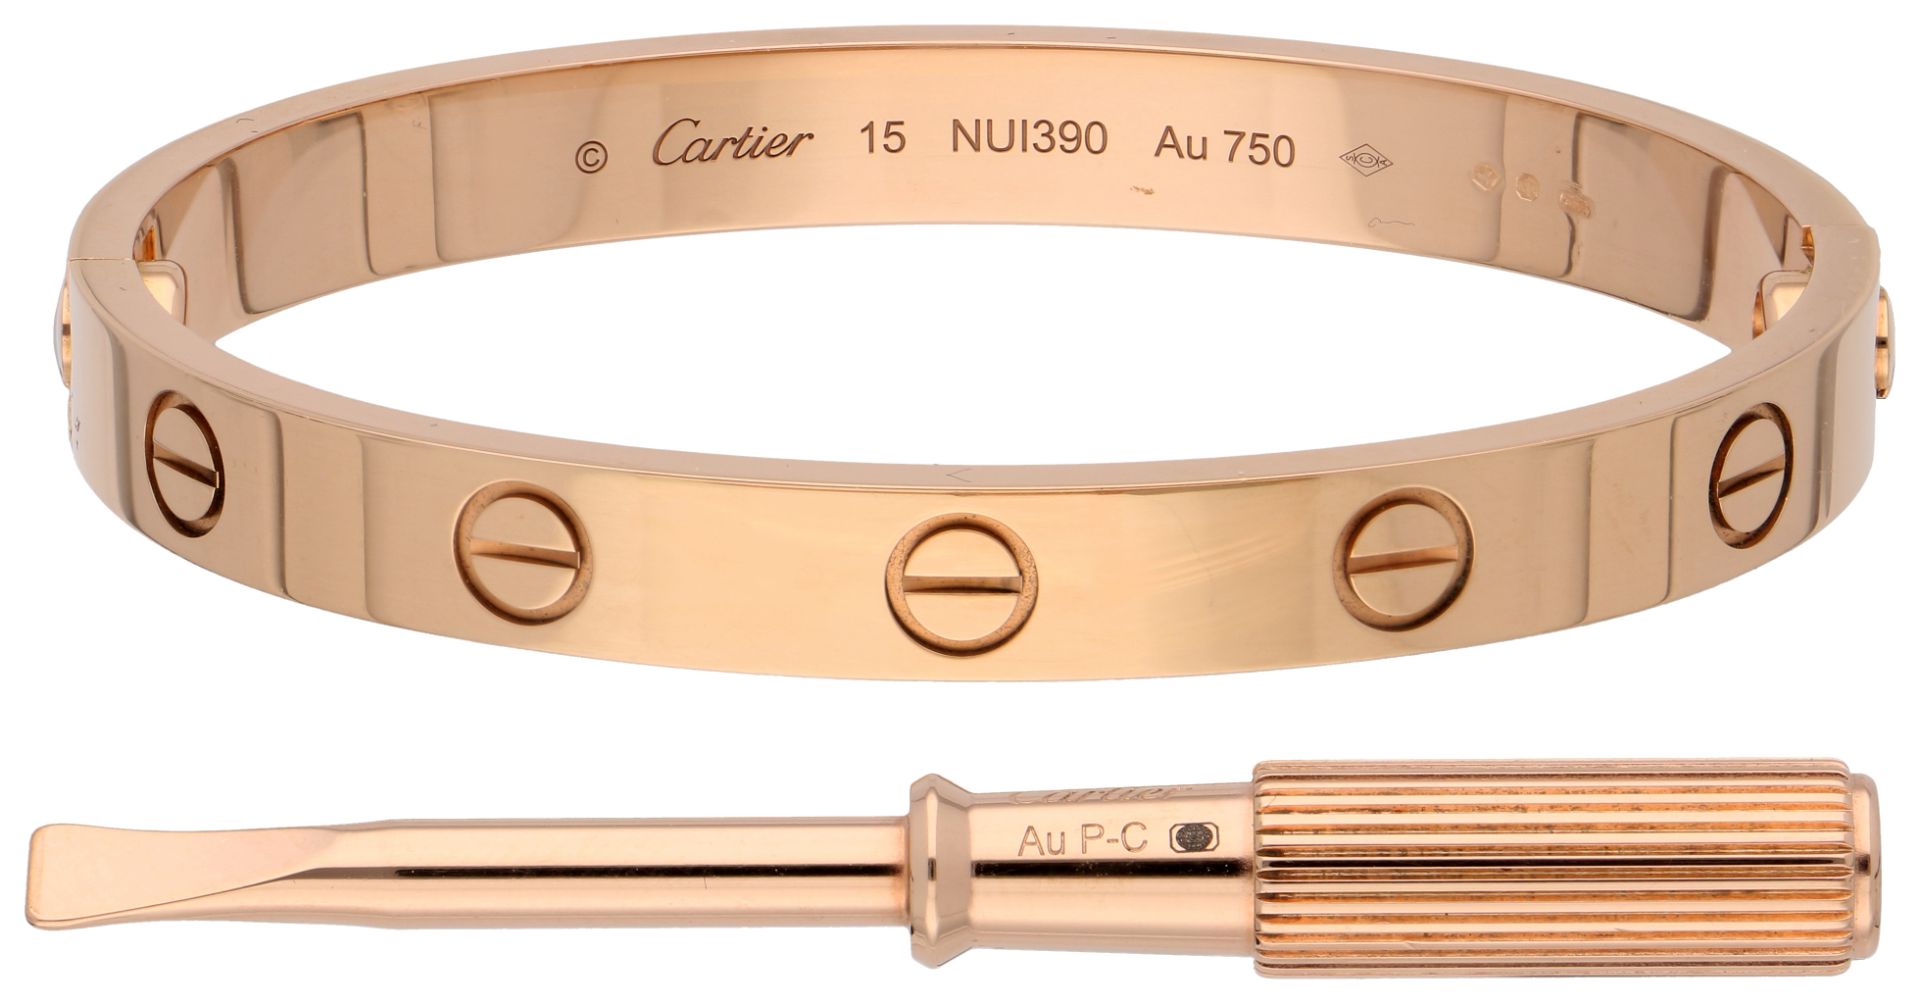 No Reserve - Cartier 18k rose gold love bracelet.